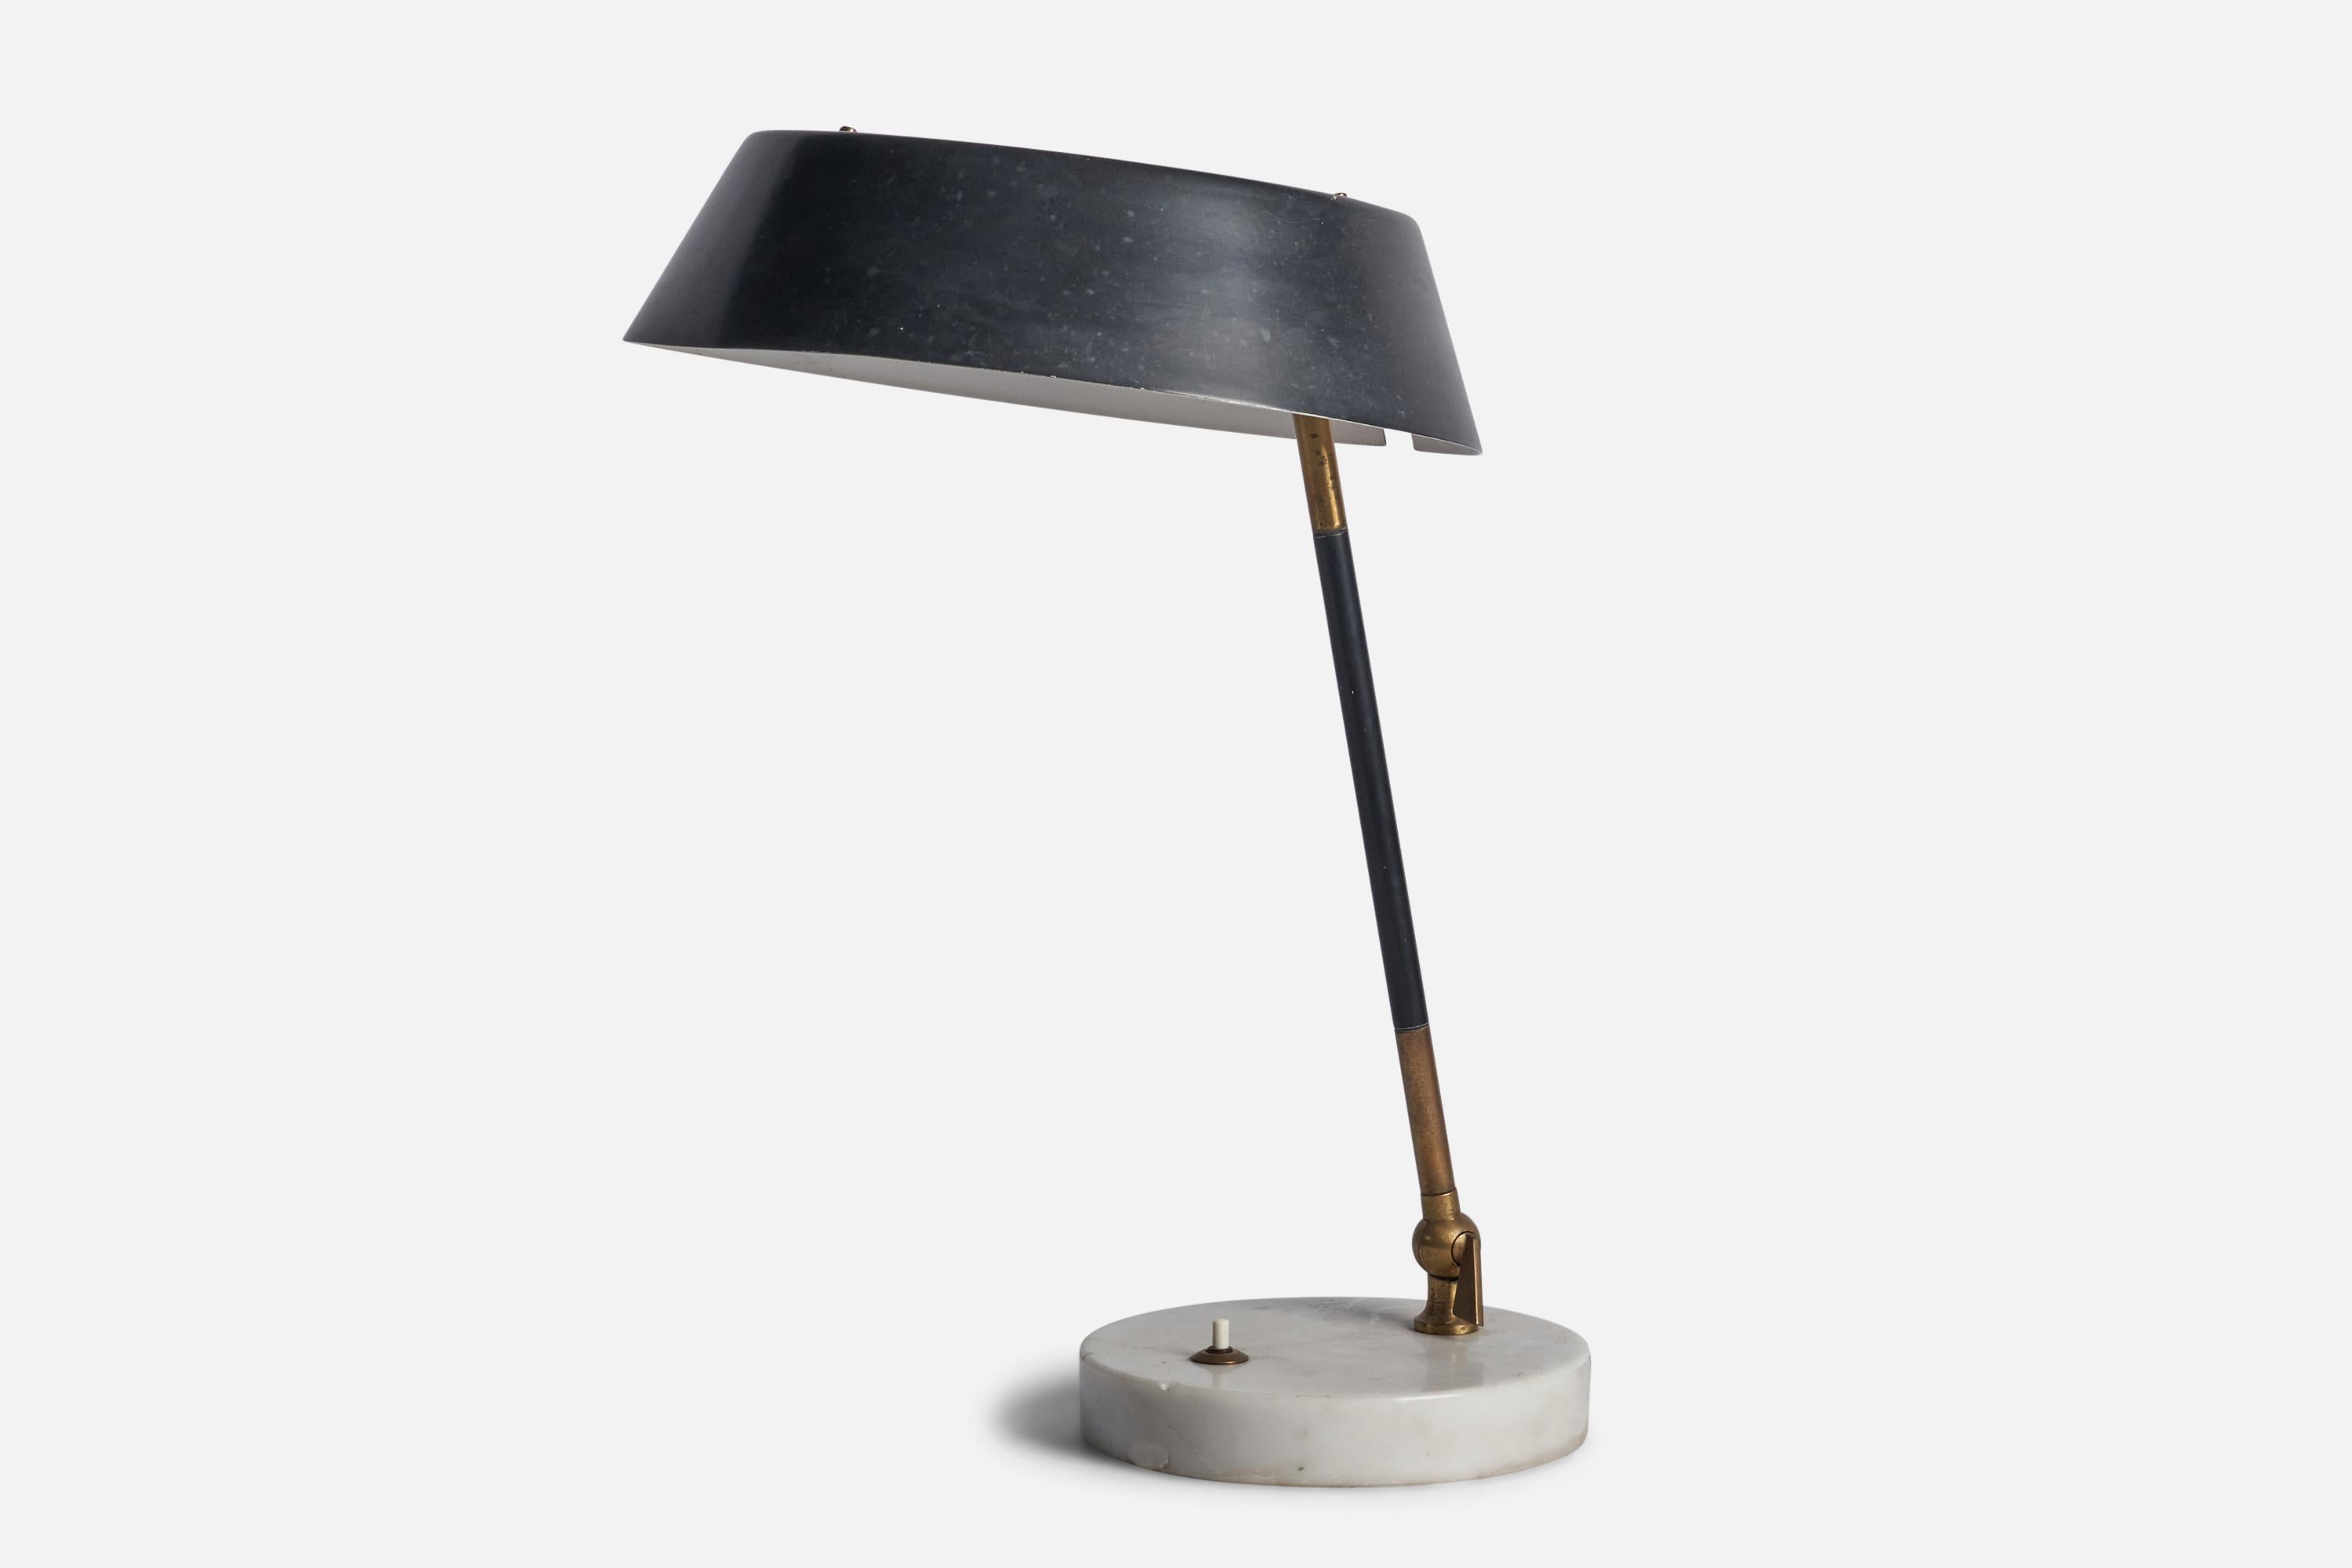 Lampe de table en laiton, marbre, acrylique et métal laqué noir, conçue et produite par Stilux Milano, Italie, années 1950.

Dimensions globales (pouces) : 16.75